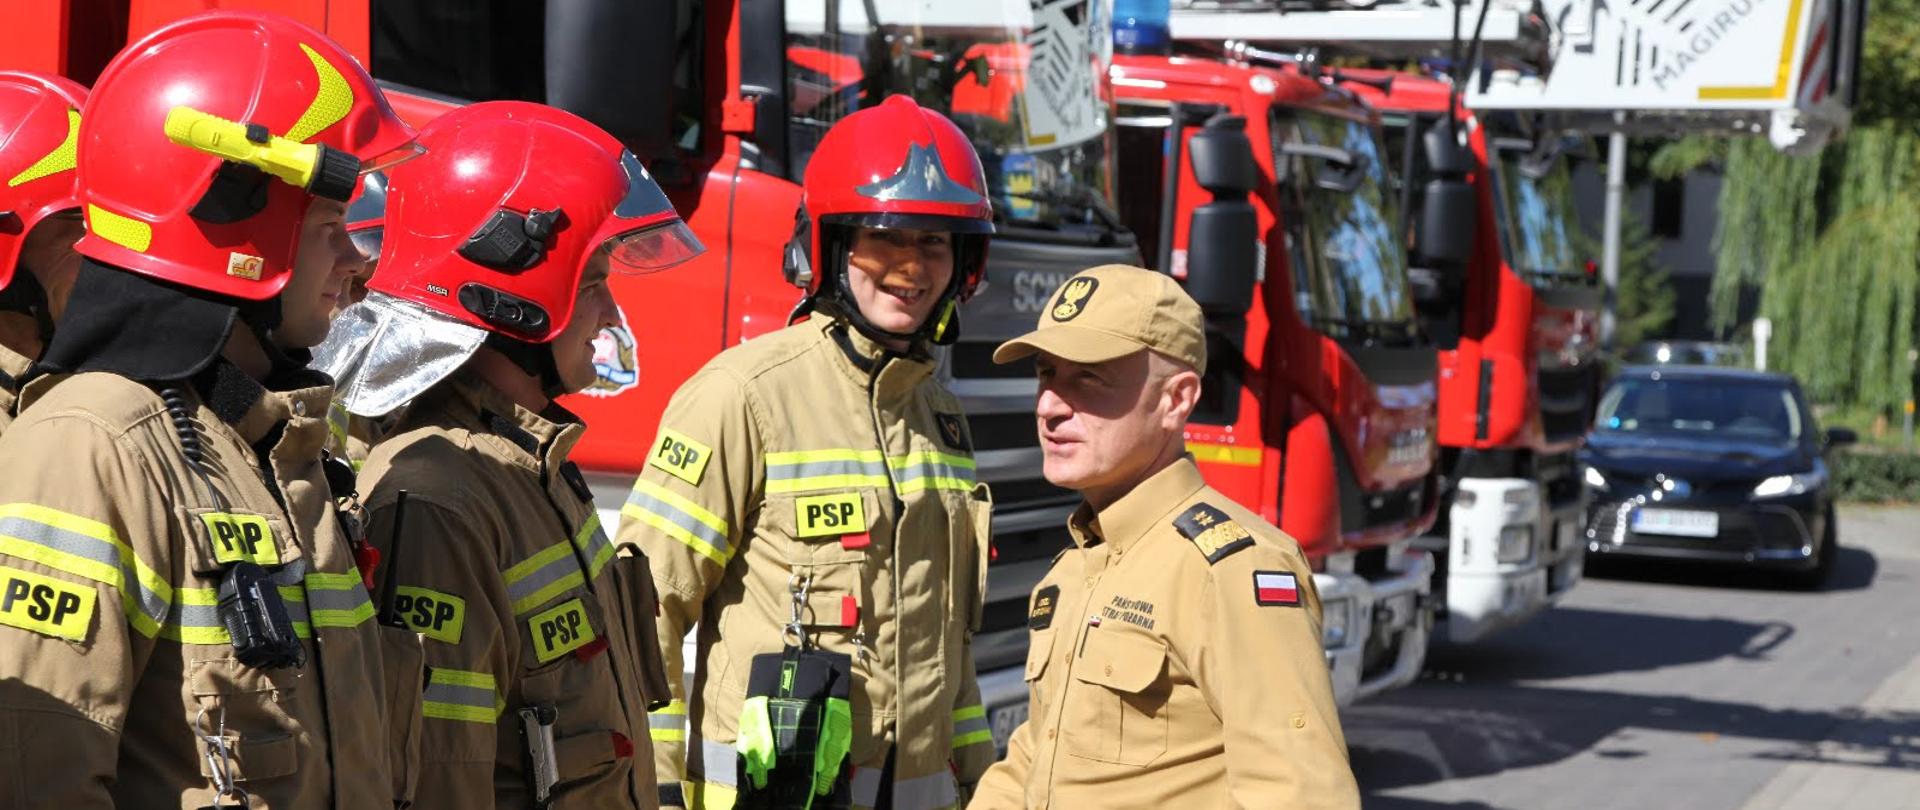 Komendant główny Państwowej Straży Pożarnej wita się ze strażakami ubranymi w hełmy oraz ubranie specjalne.